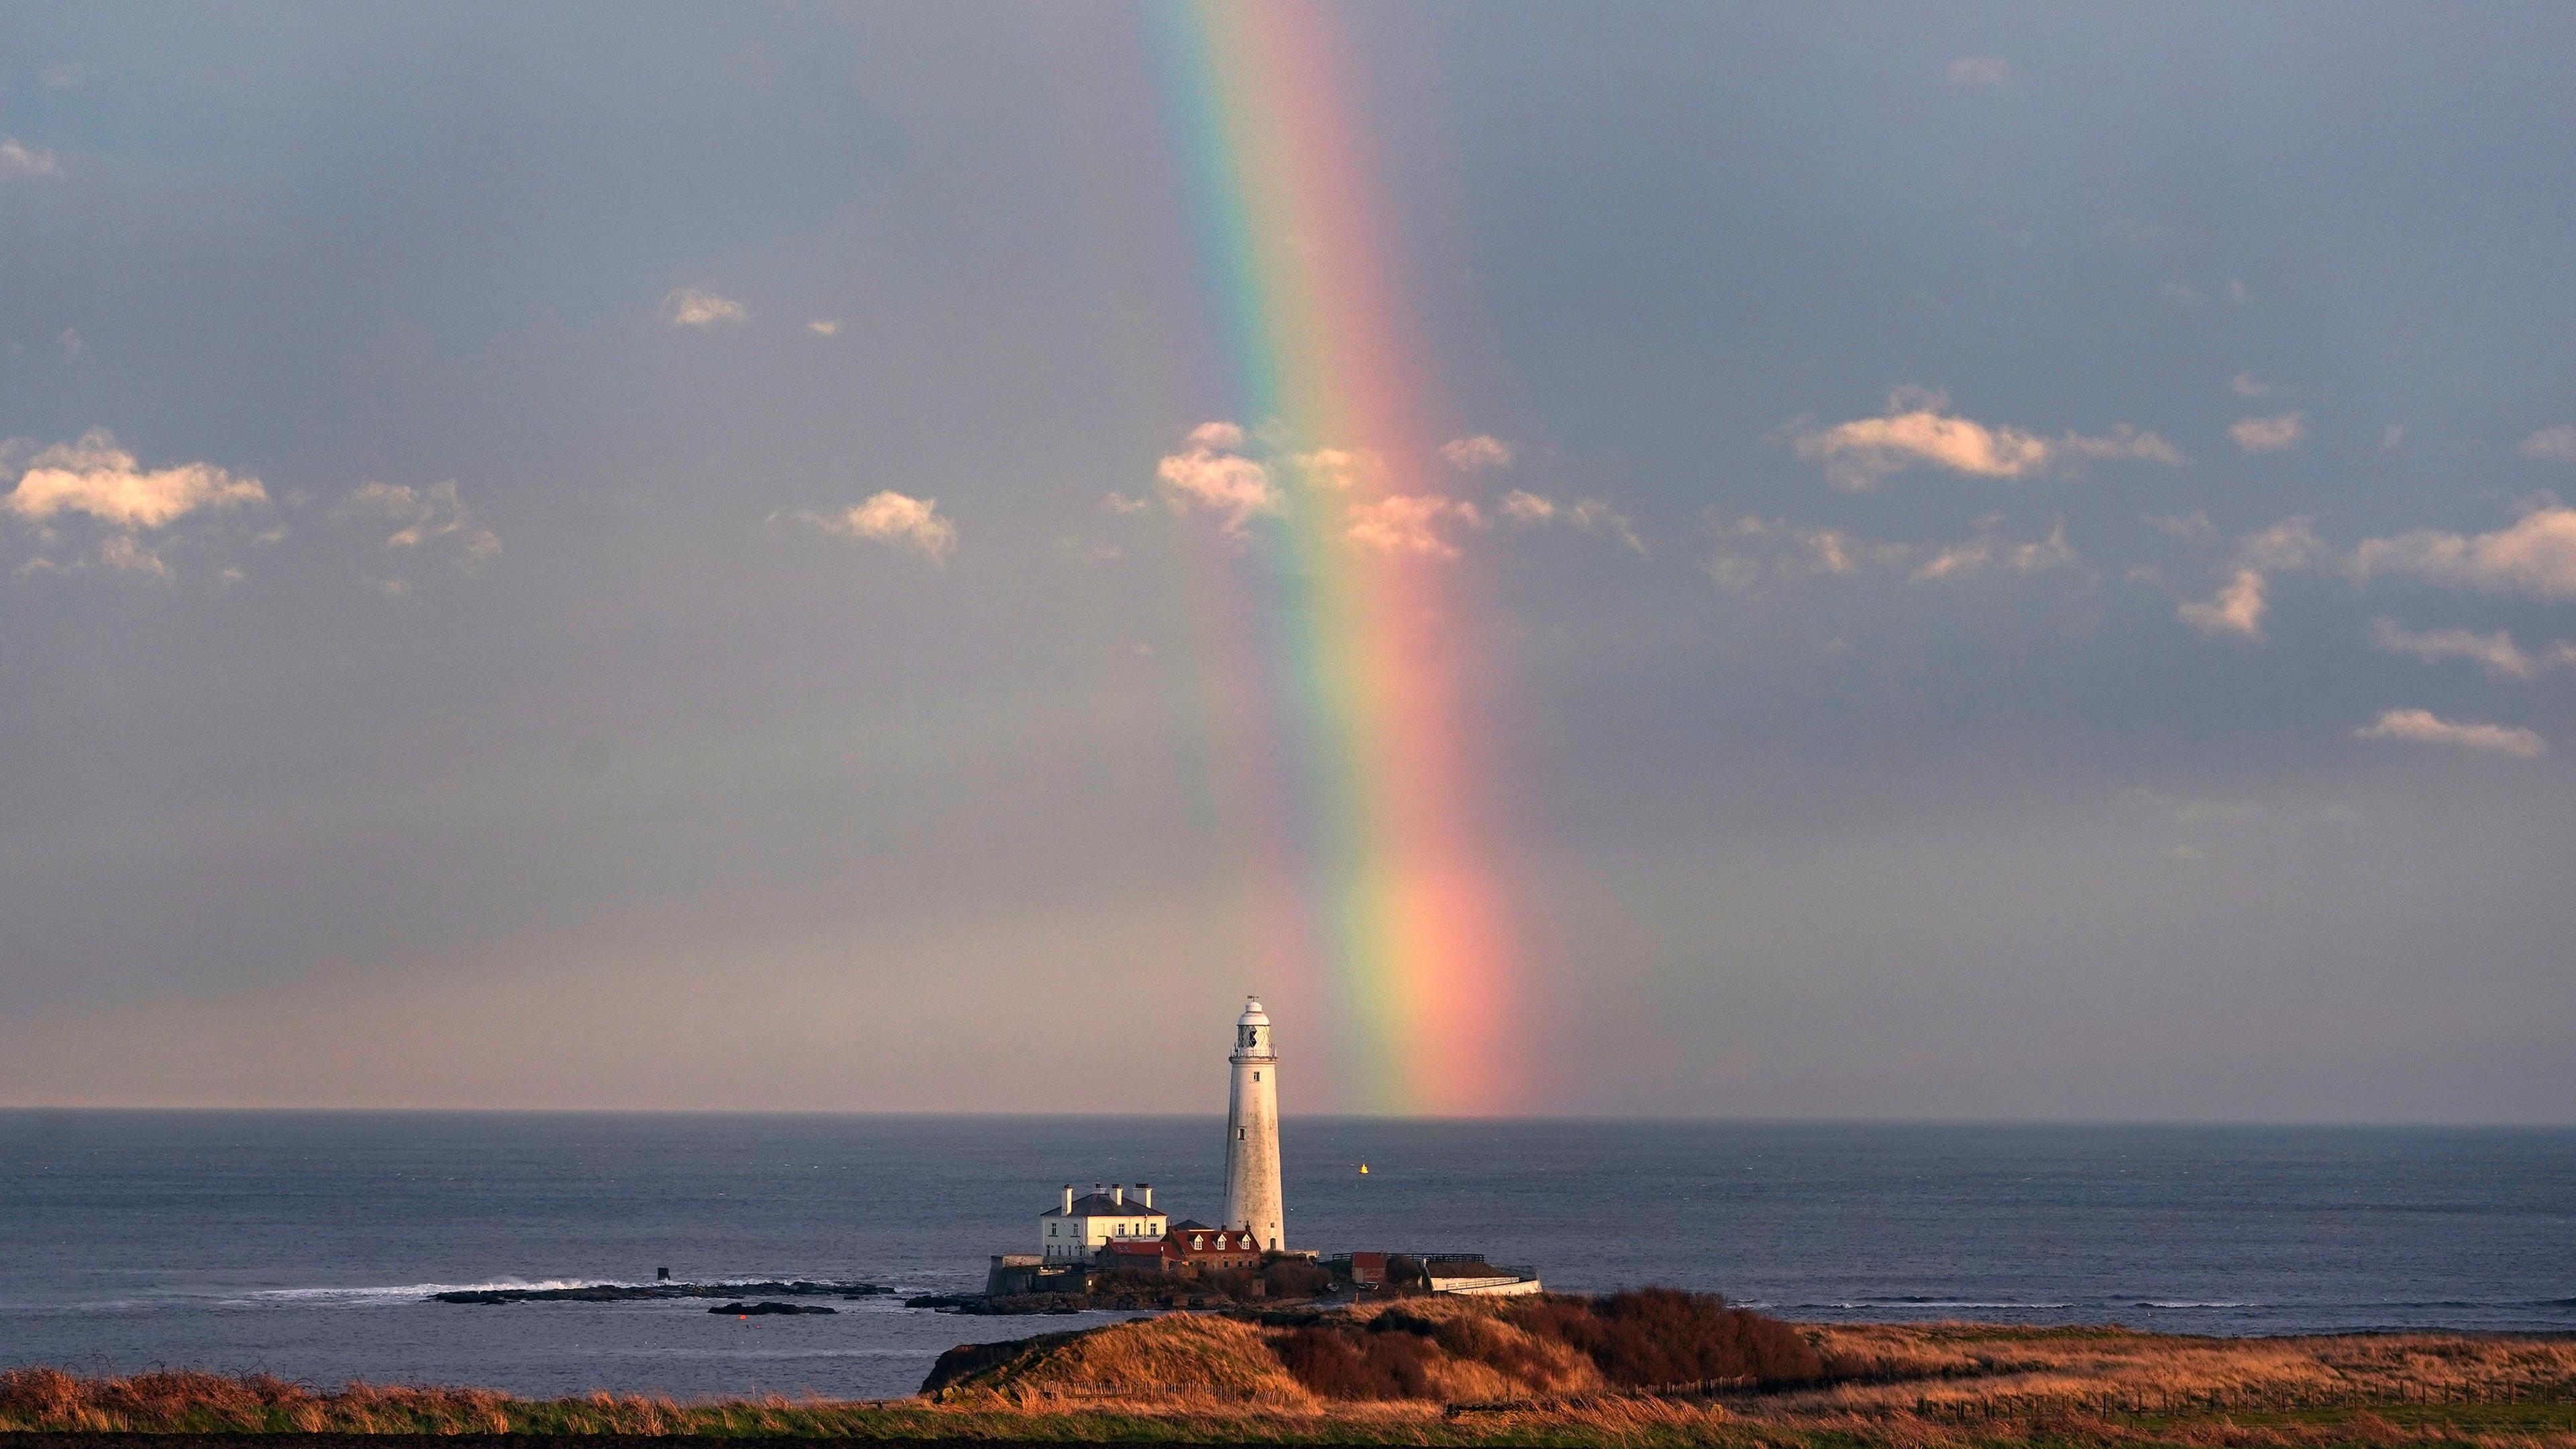 Regenbogen, aufgenommen am 20.02.2019 in White Bay (Großbritannien)